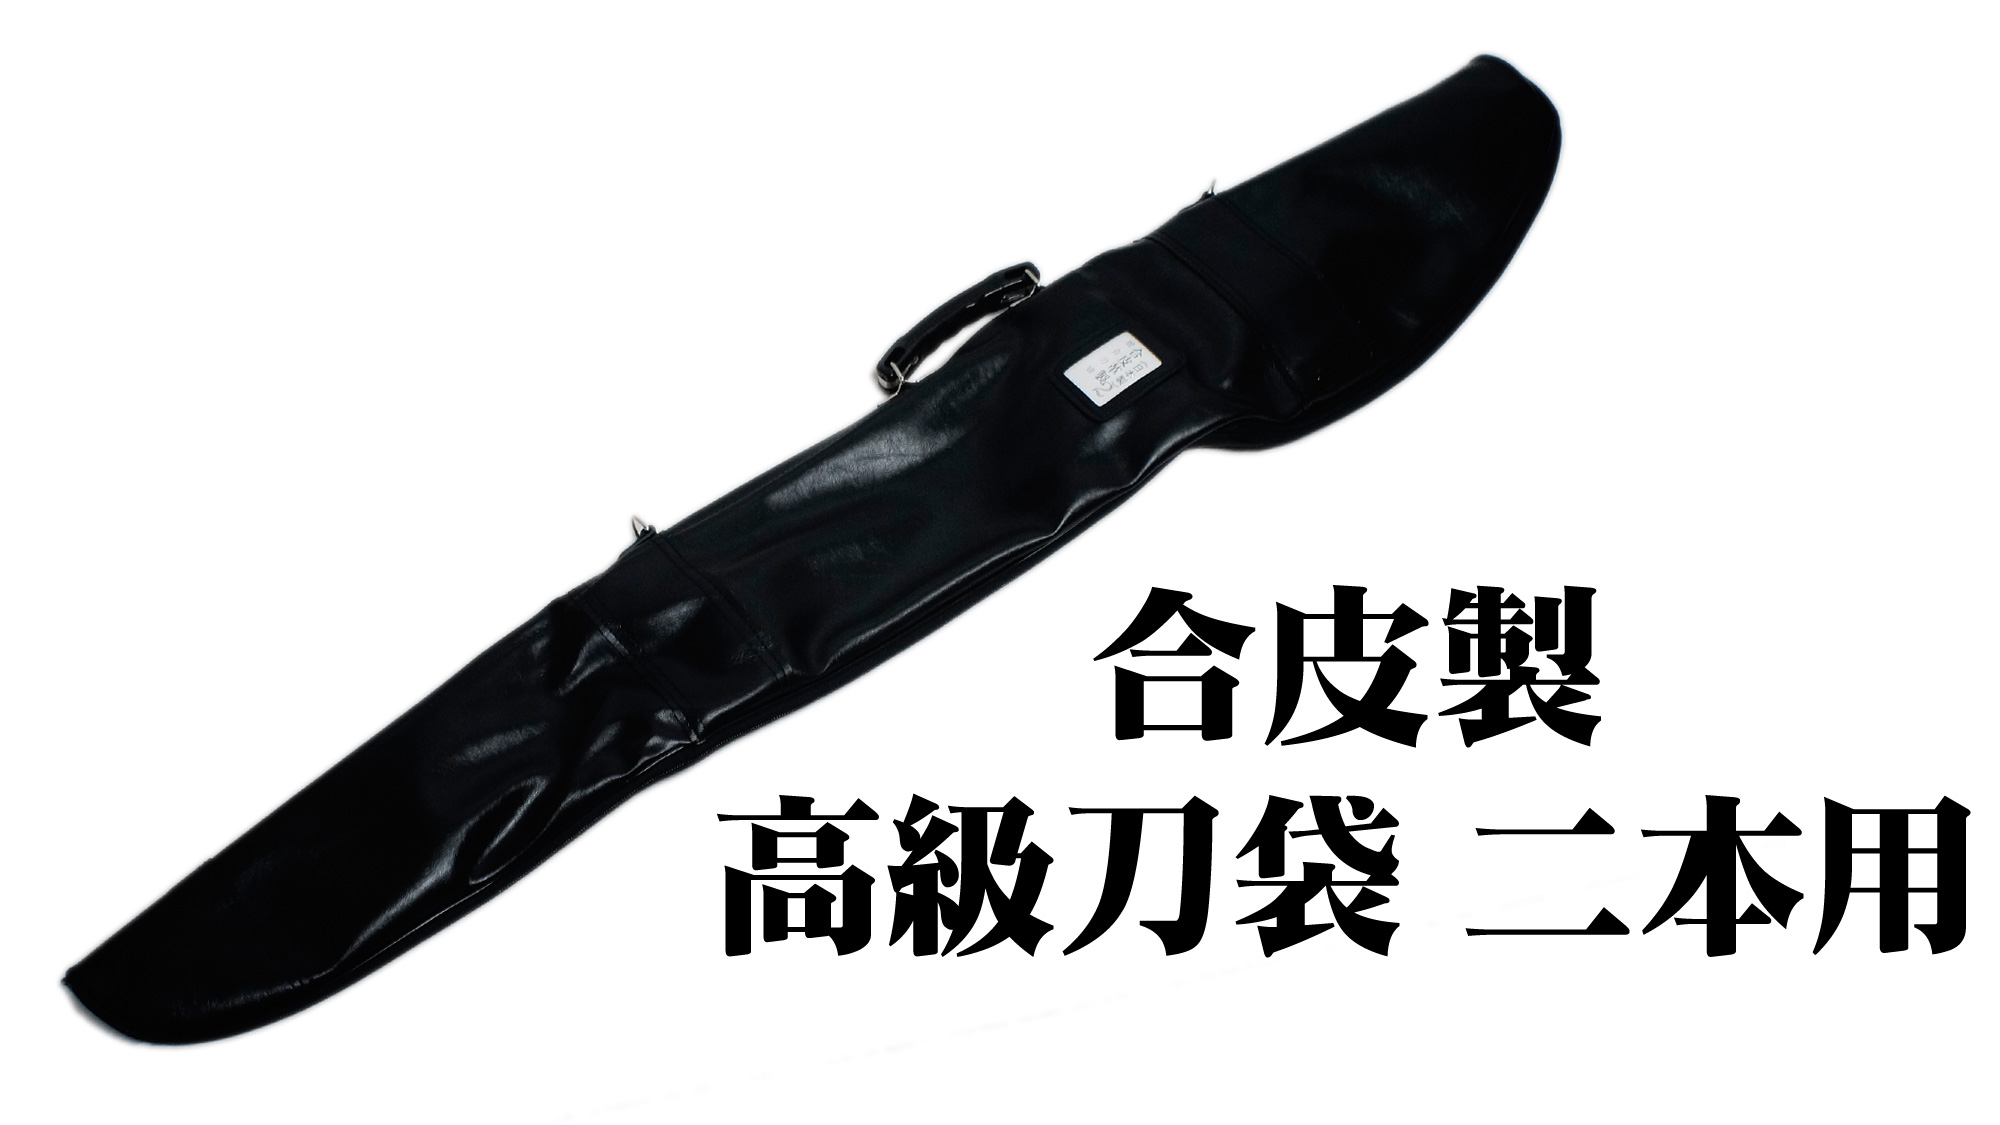 匠刀房 合皮製 高級刀袋 二本用 ZK-103 – 居合 刀入れ